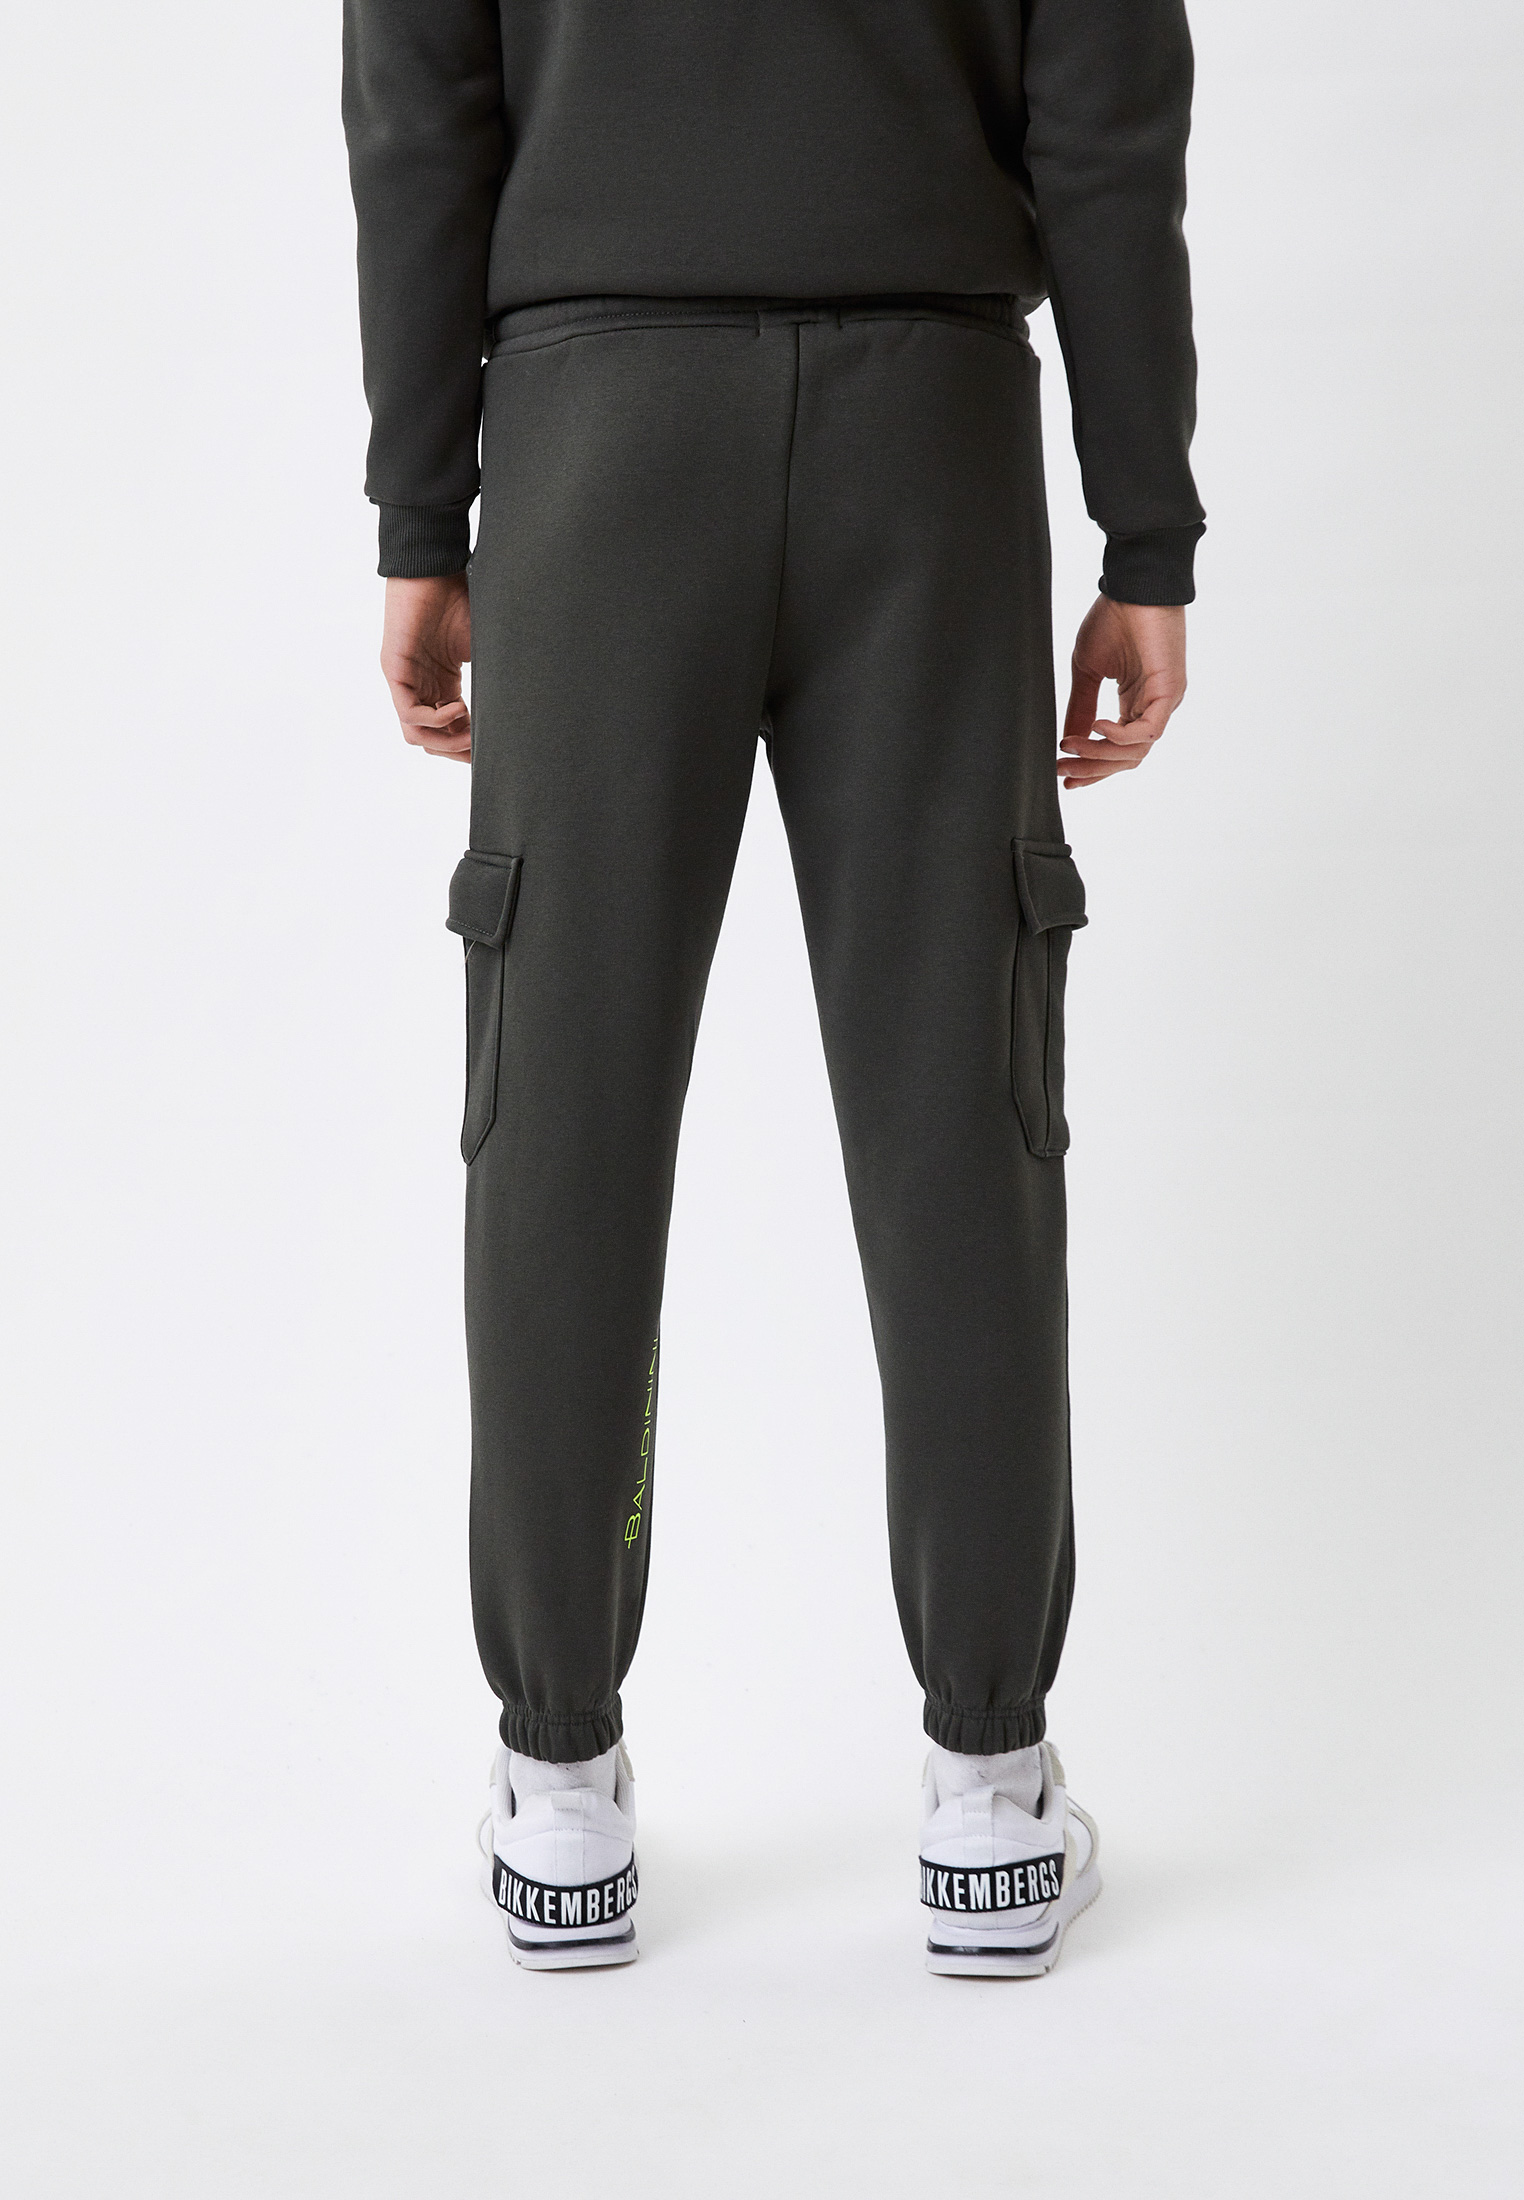 Мужские спортивные брюки Baldinini (Балдинини) BDO-M072: изображение 3